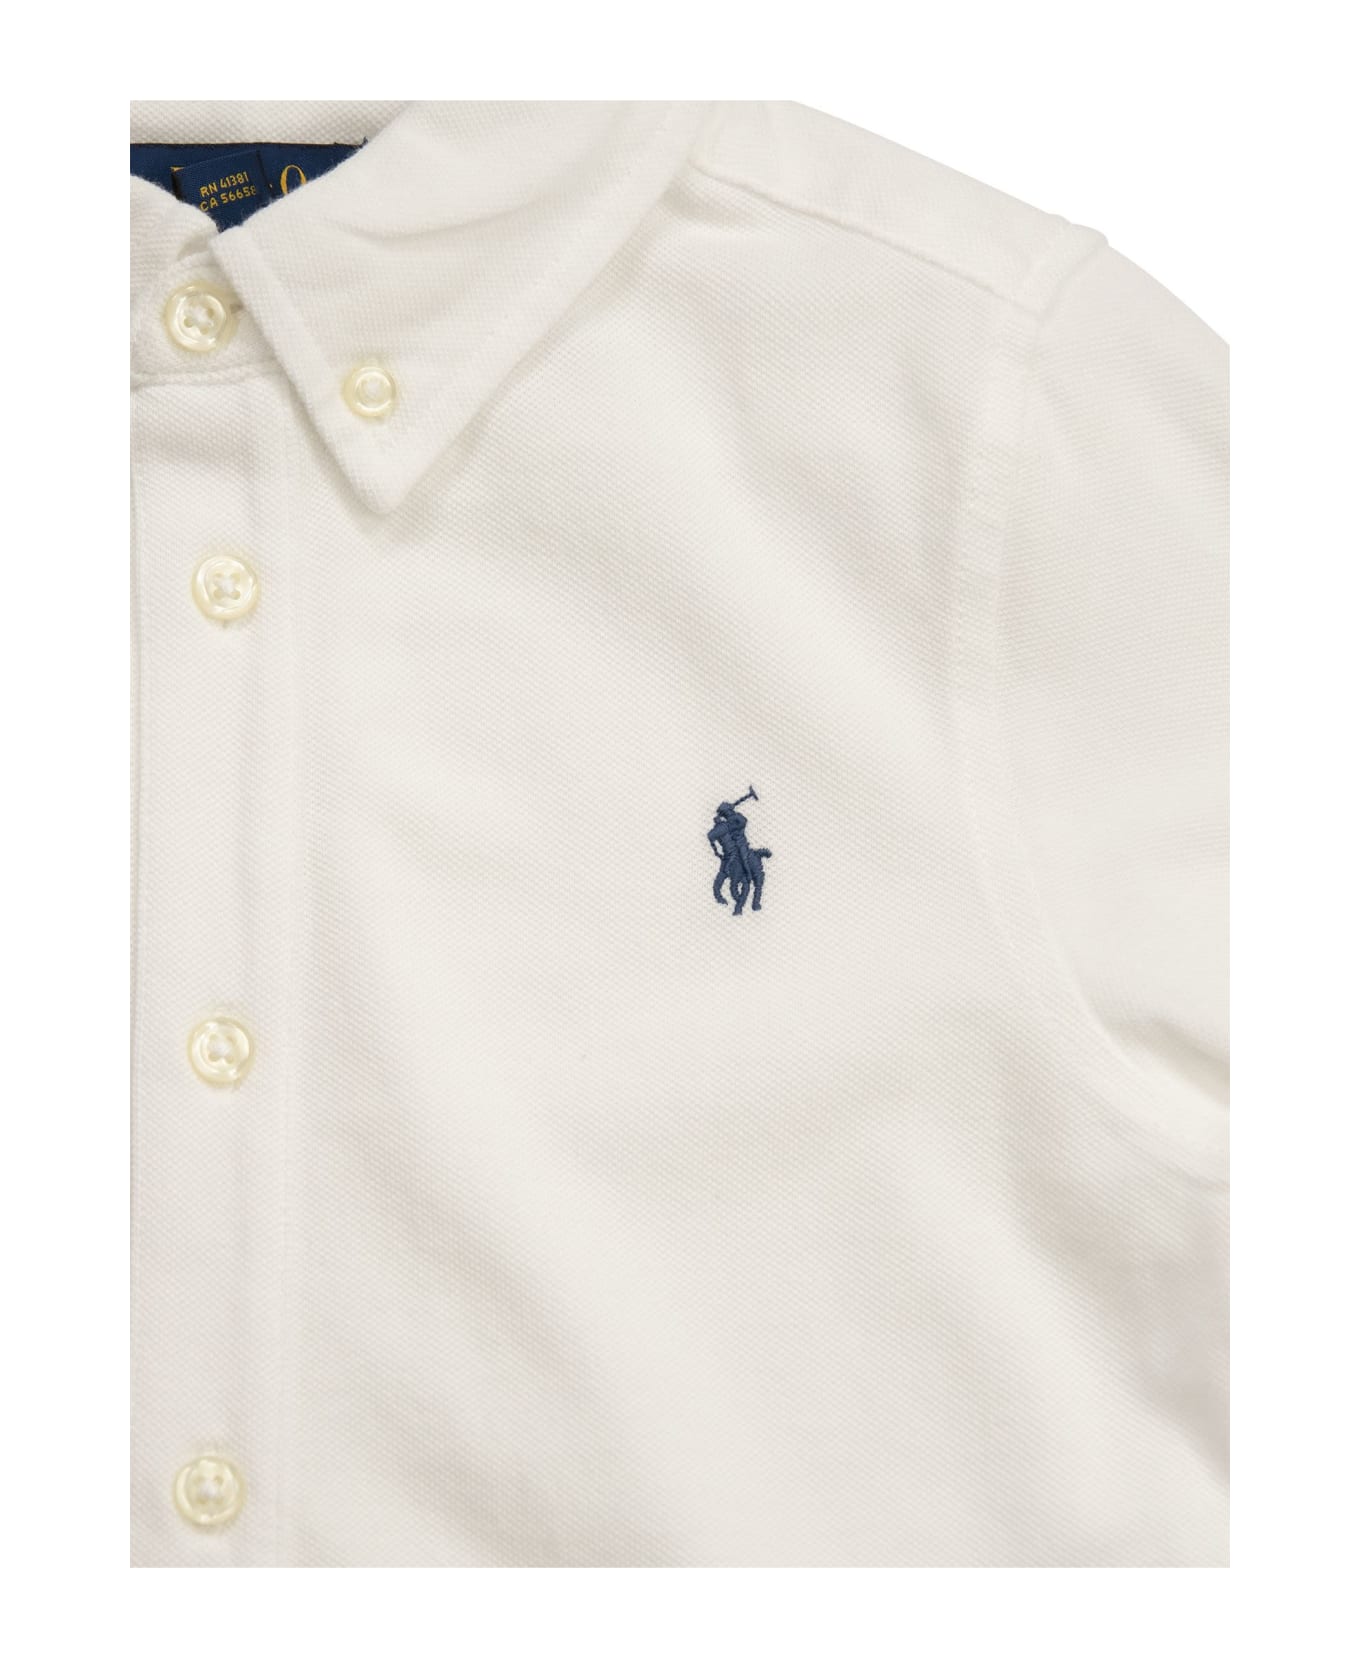 Polo Ralph Lauren Ultralight Cotton Pique Shirt - White